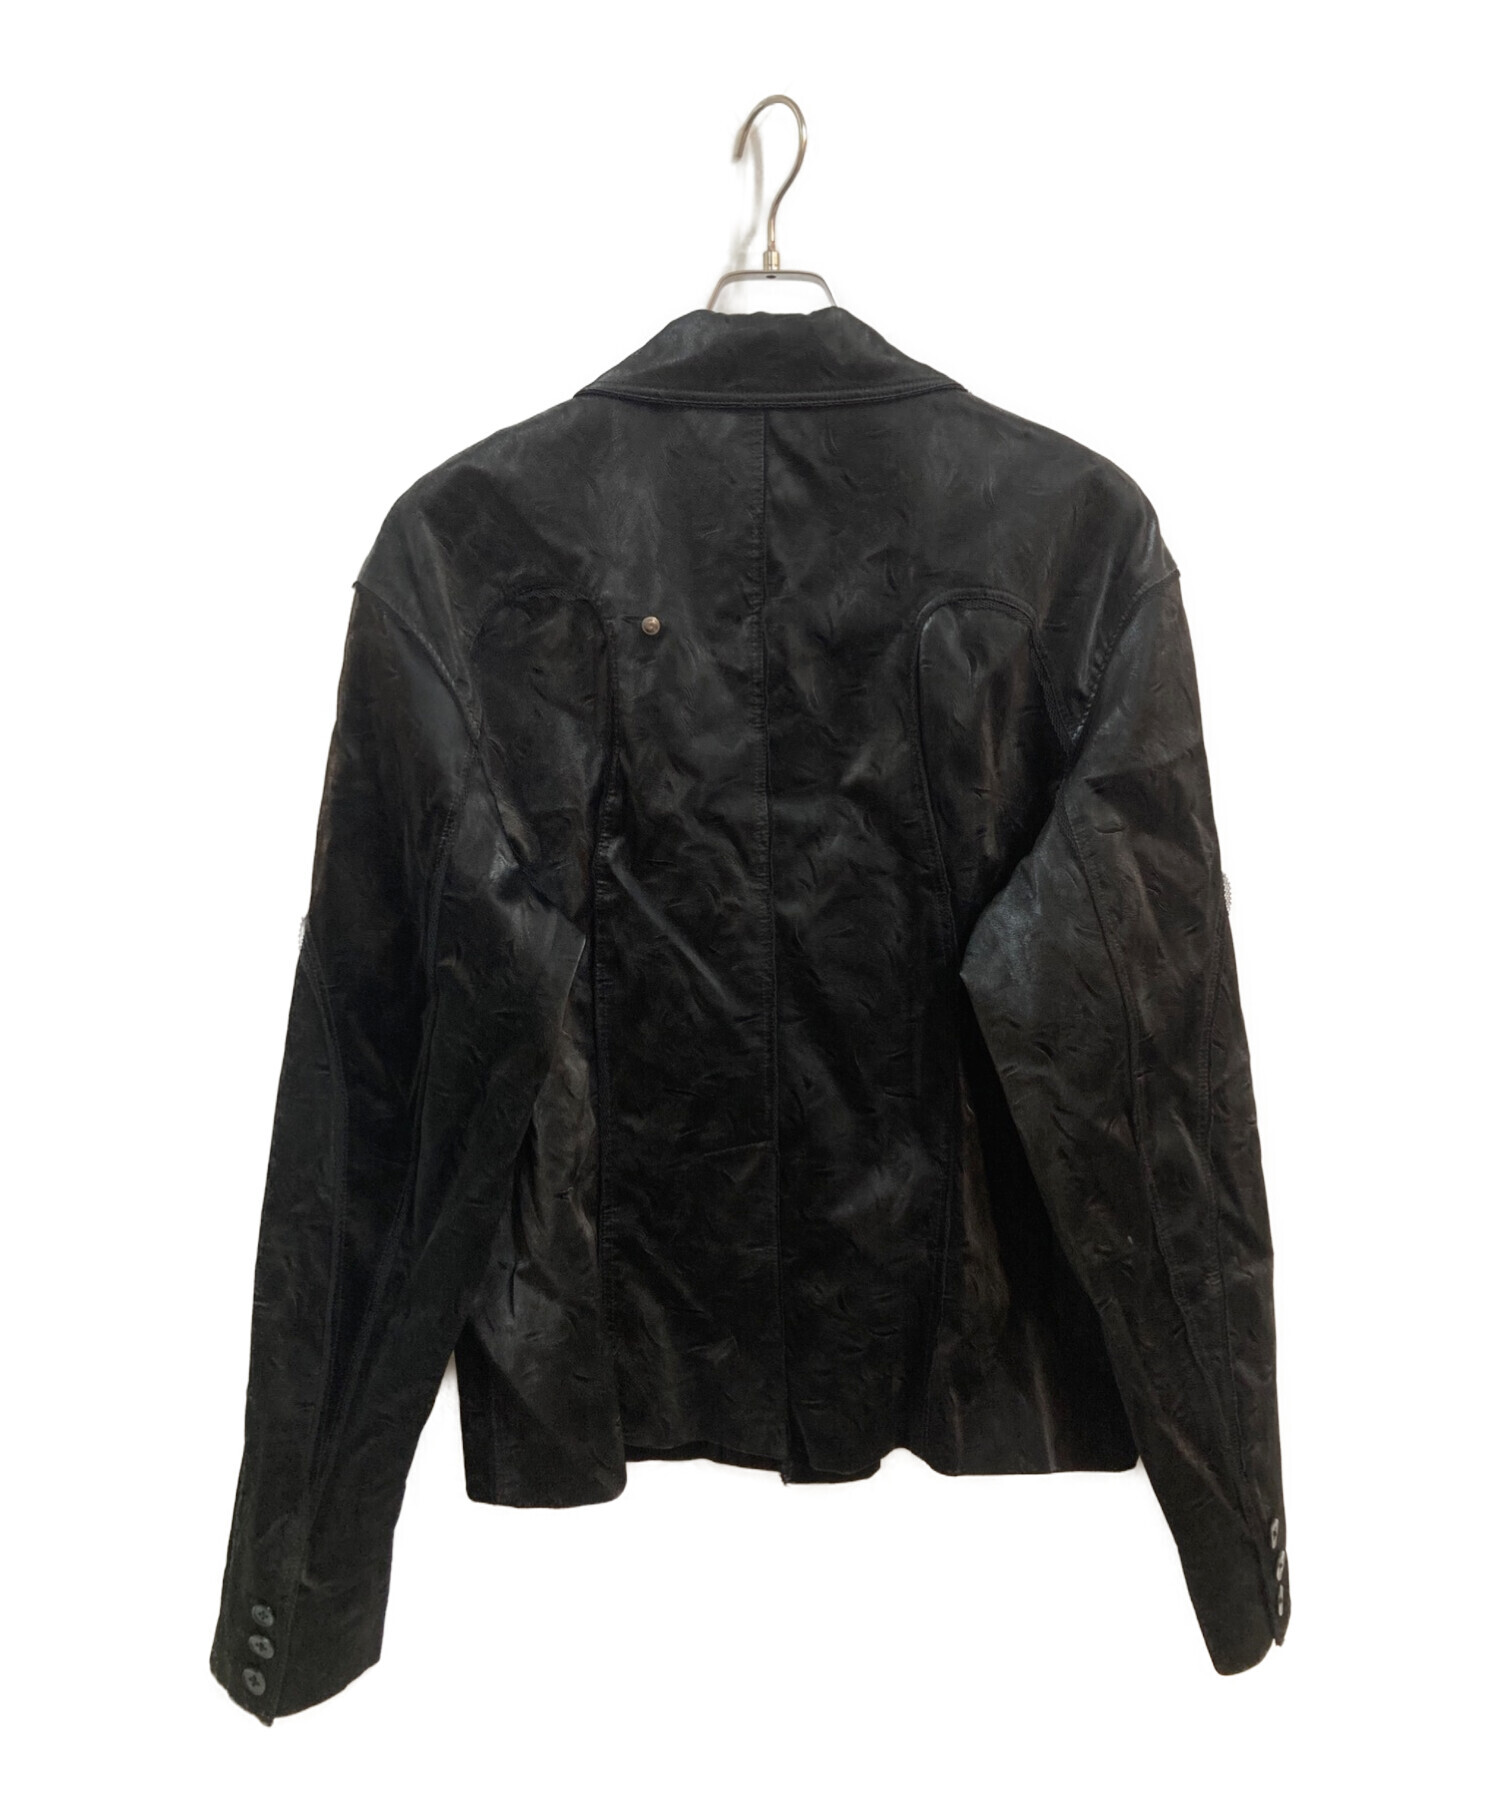 NUTEMPEROR (ニュートエンペラー) PUレザーデザインジャケット ブラック サイズ:3